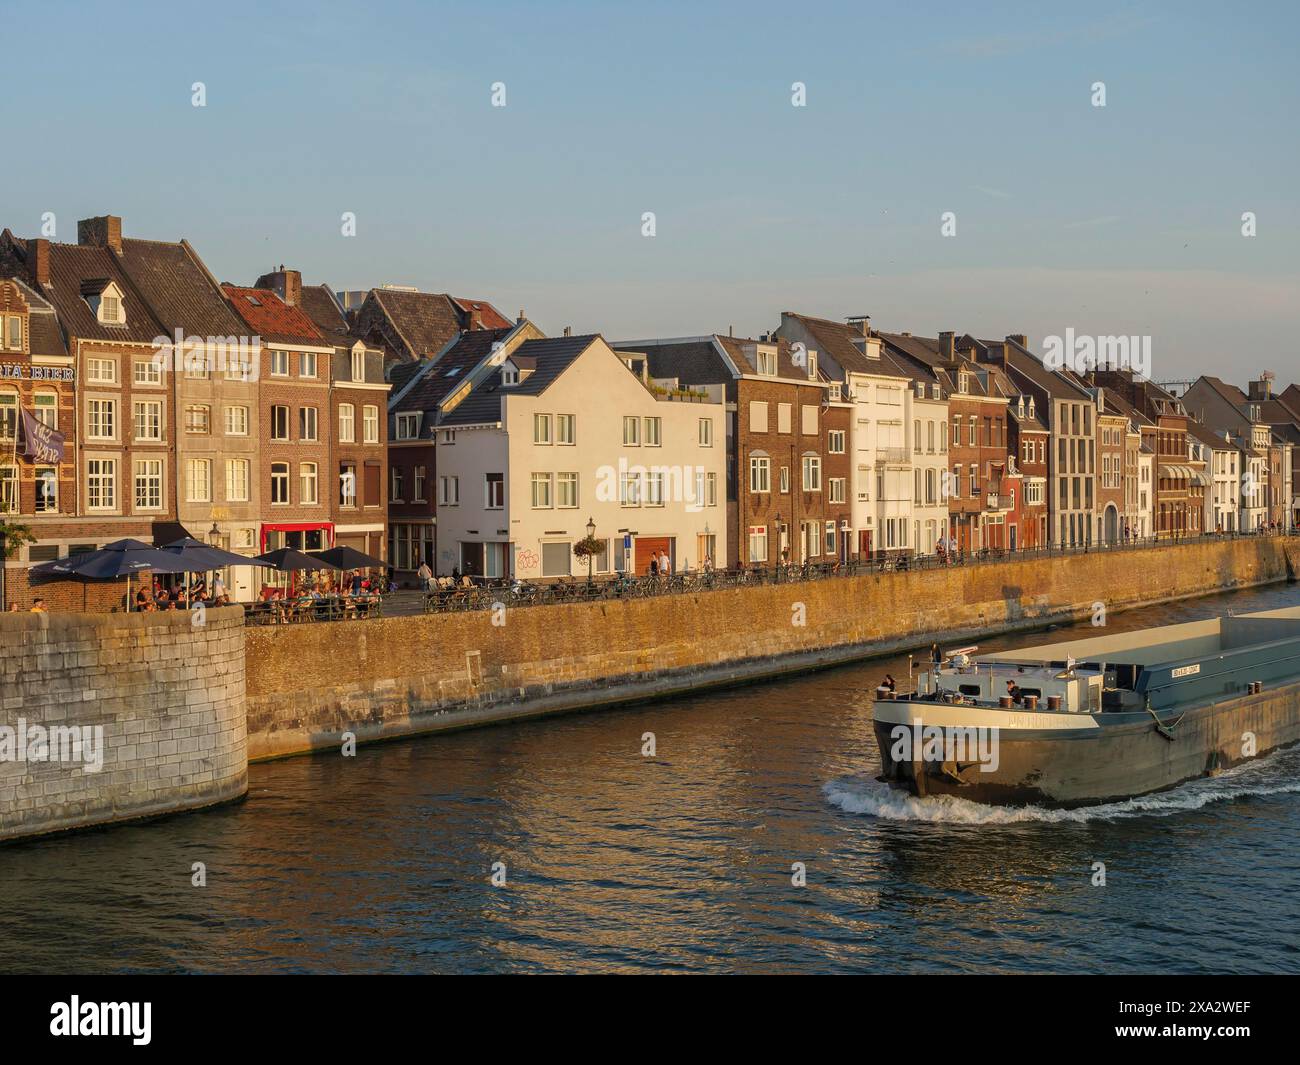 Grand navire naviguant le long d'une rangée de maisons sur une rive, Maastricht, pays-Bas Banque D'Images